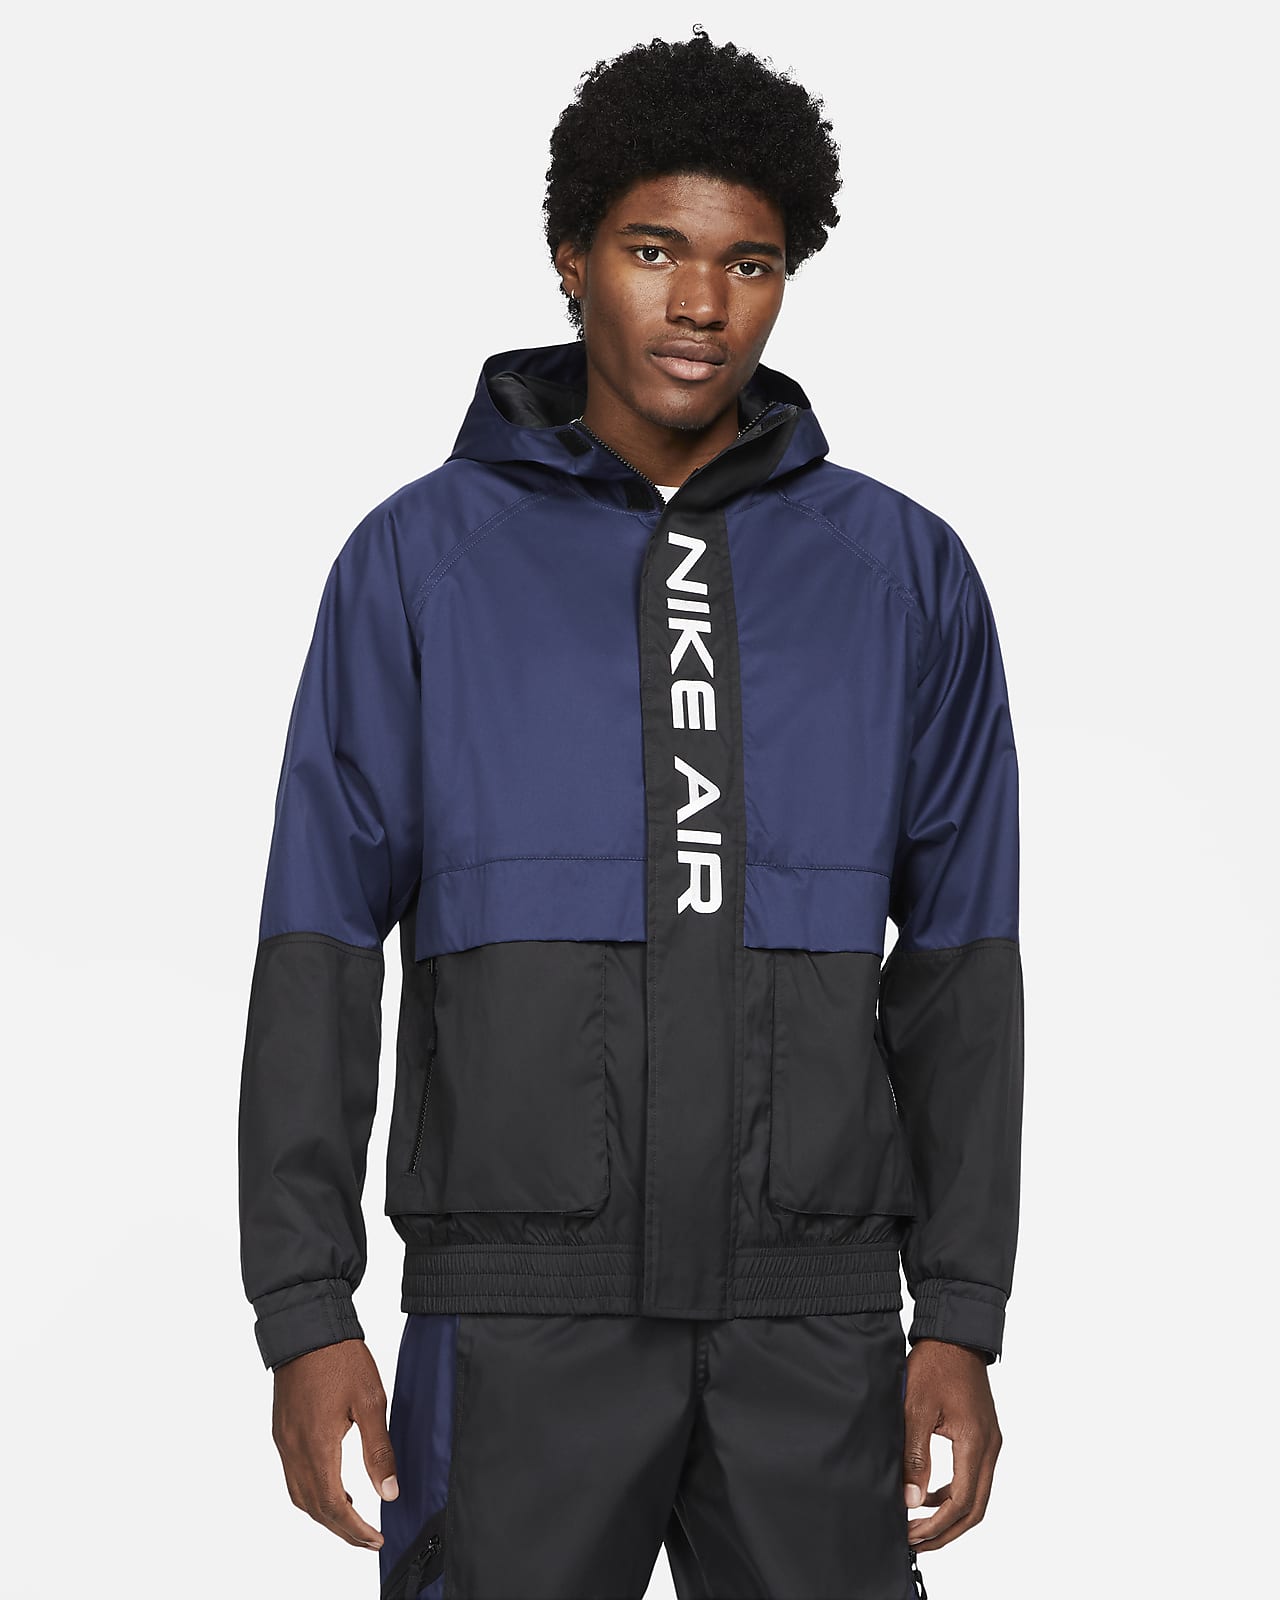 Nike Air Men's Hooded Lined Jacket. Nike LU